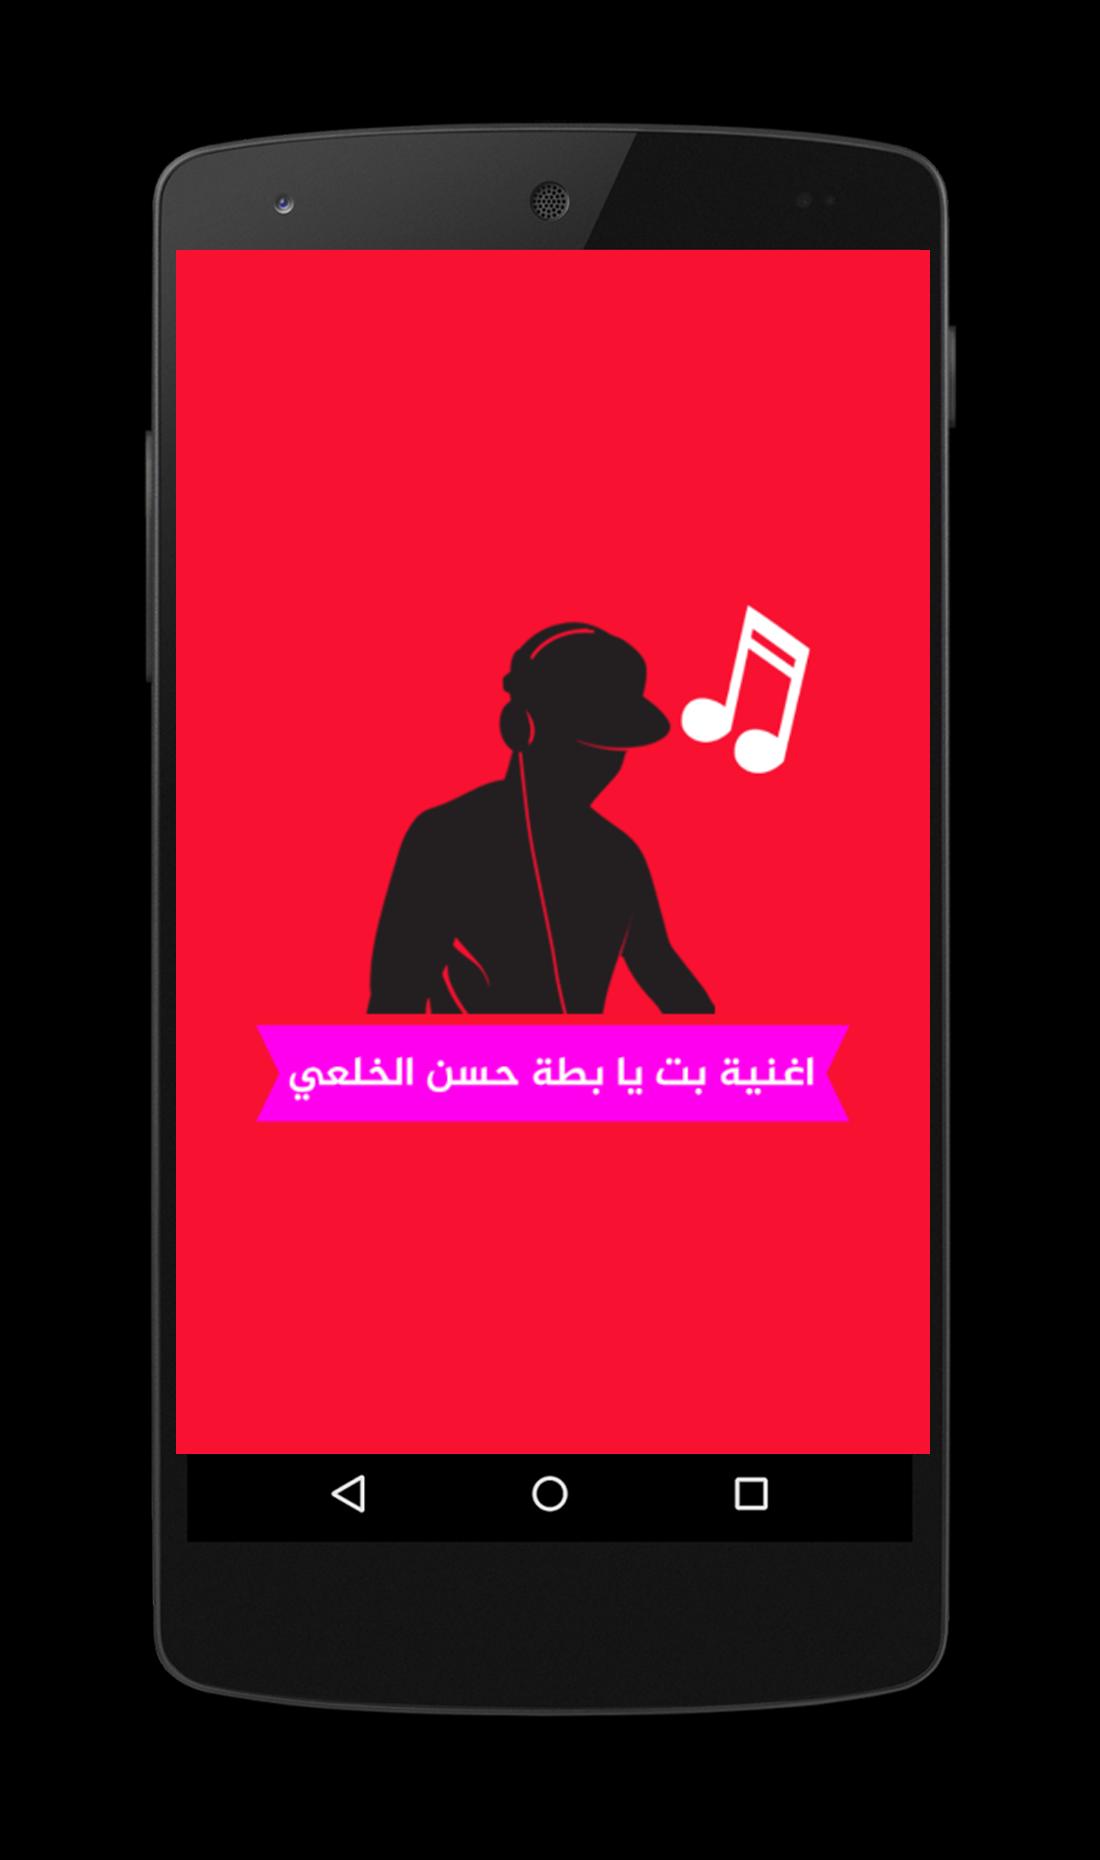 اغنية بت يا بطة حسن الخلعي For Android Apk Download